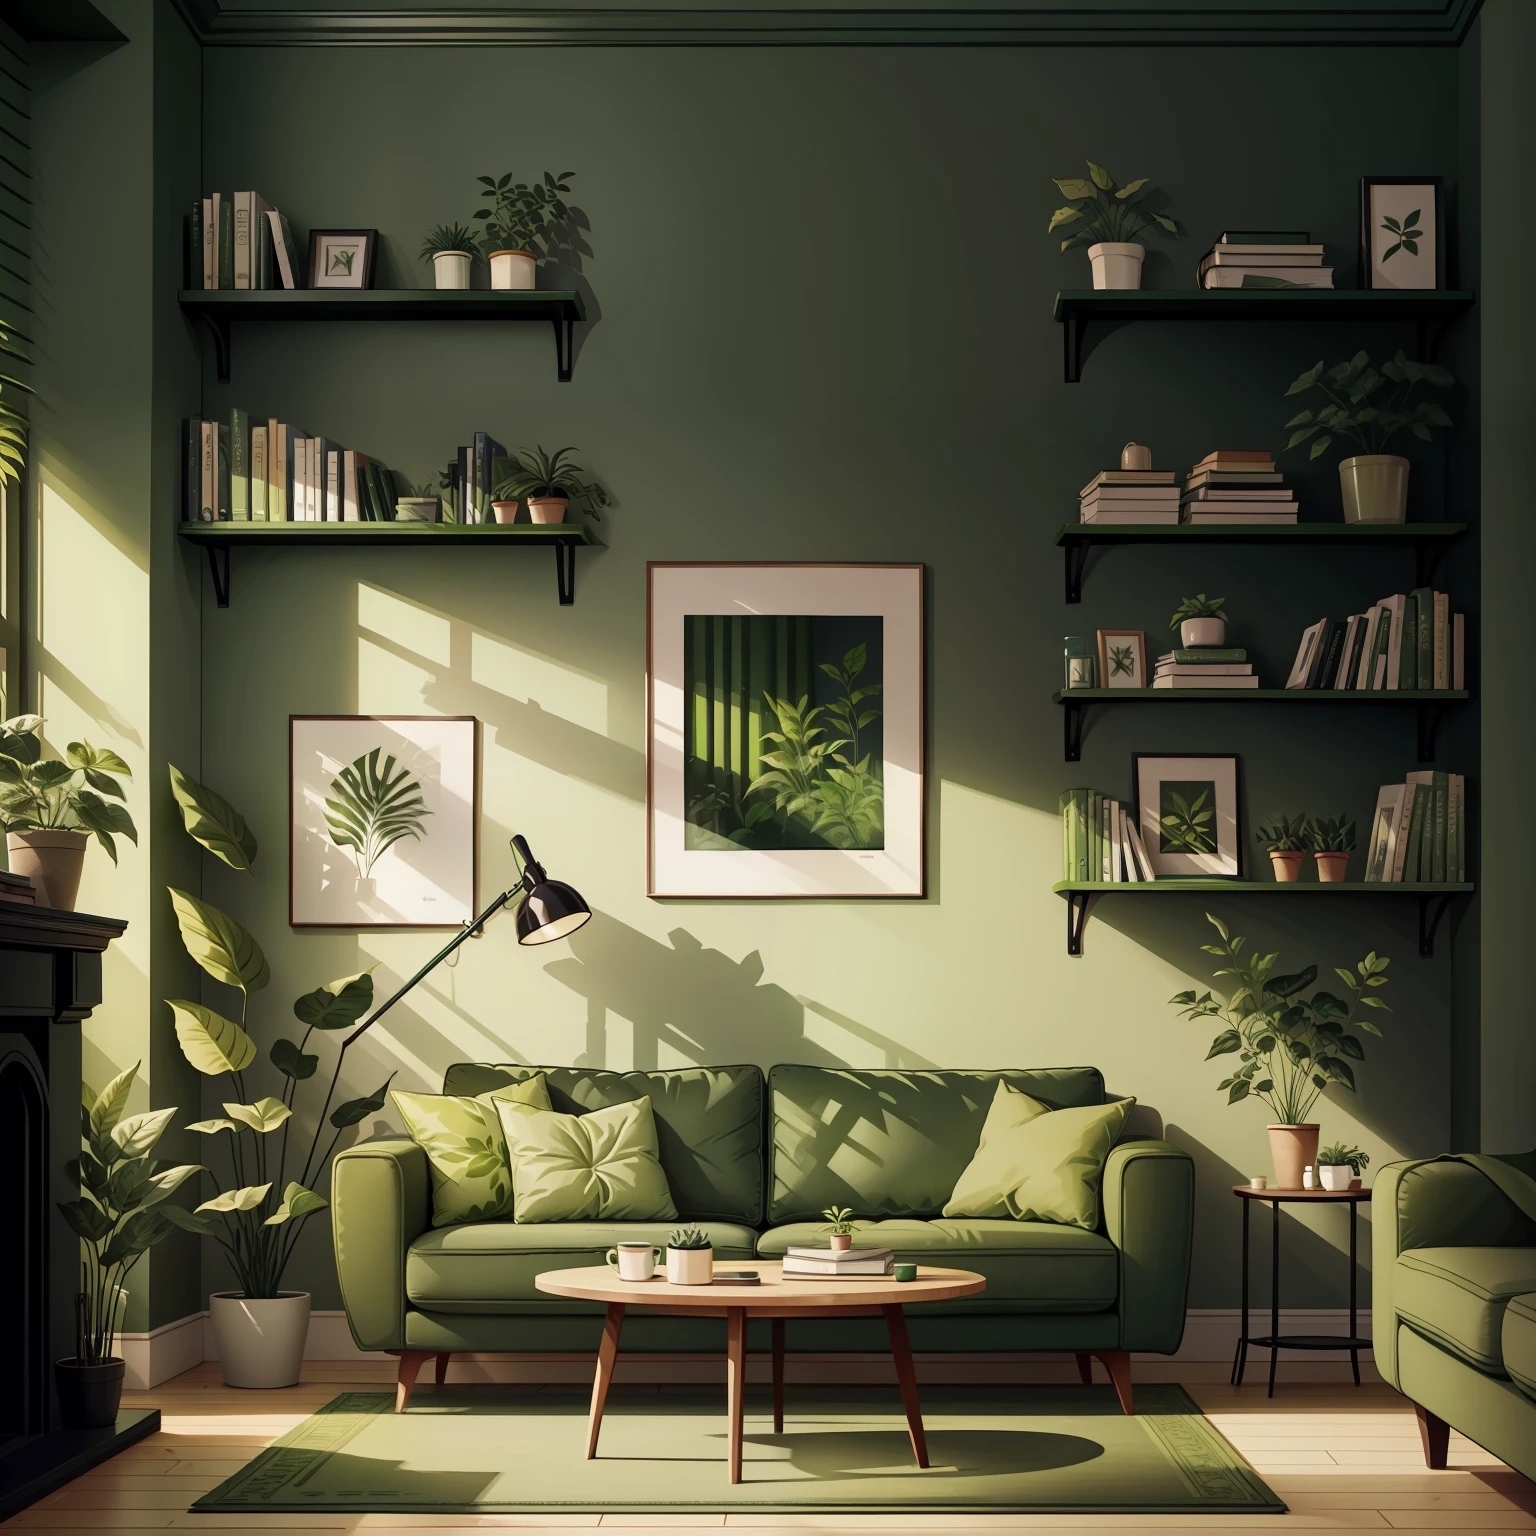 녹색 소파가 있는 거실, 벽에 녹색 식물, 책이 있는 책장